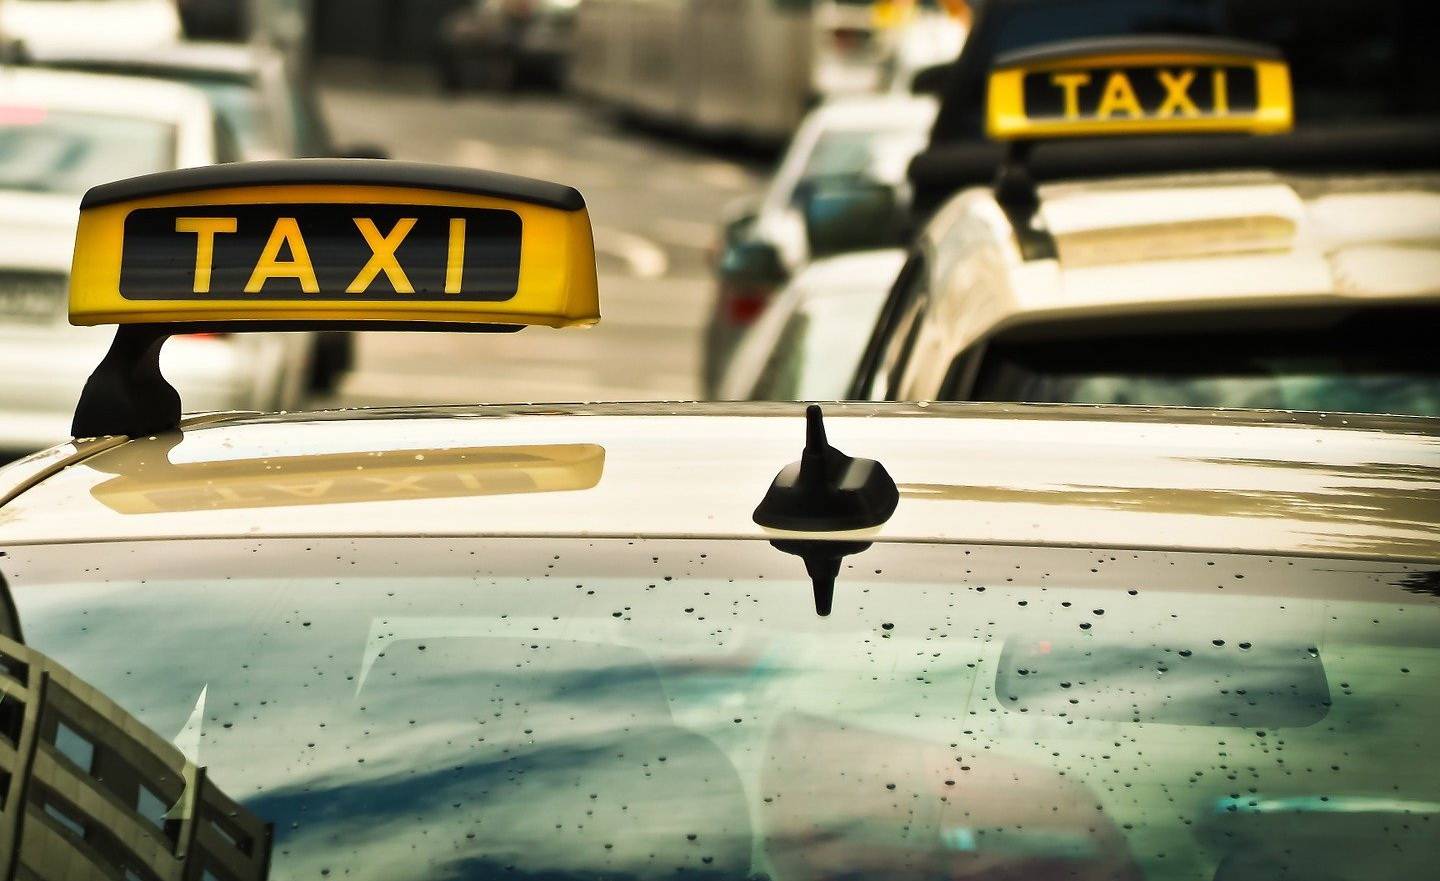 Bergische IHK will Taxiunternehmen helfen